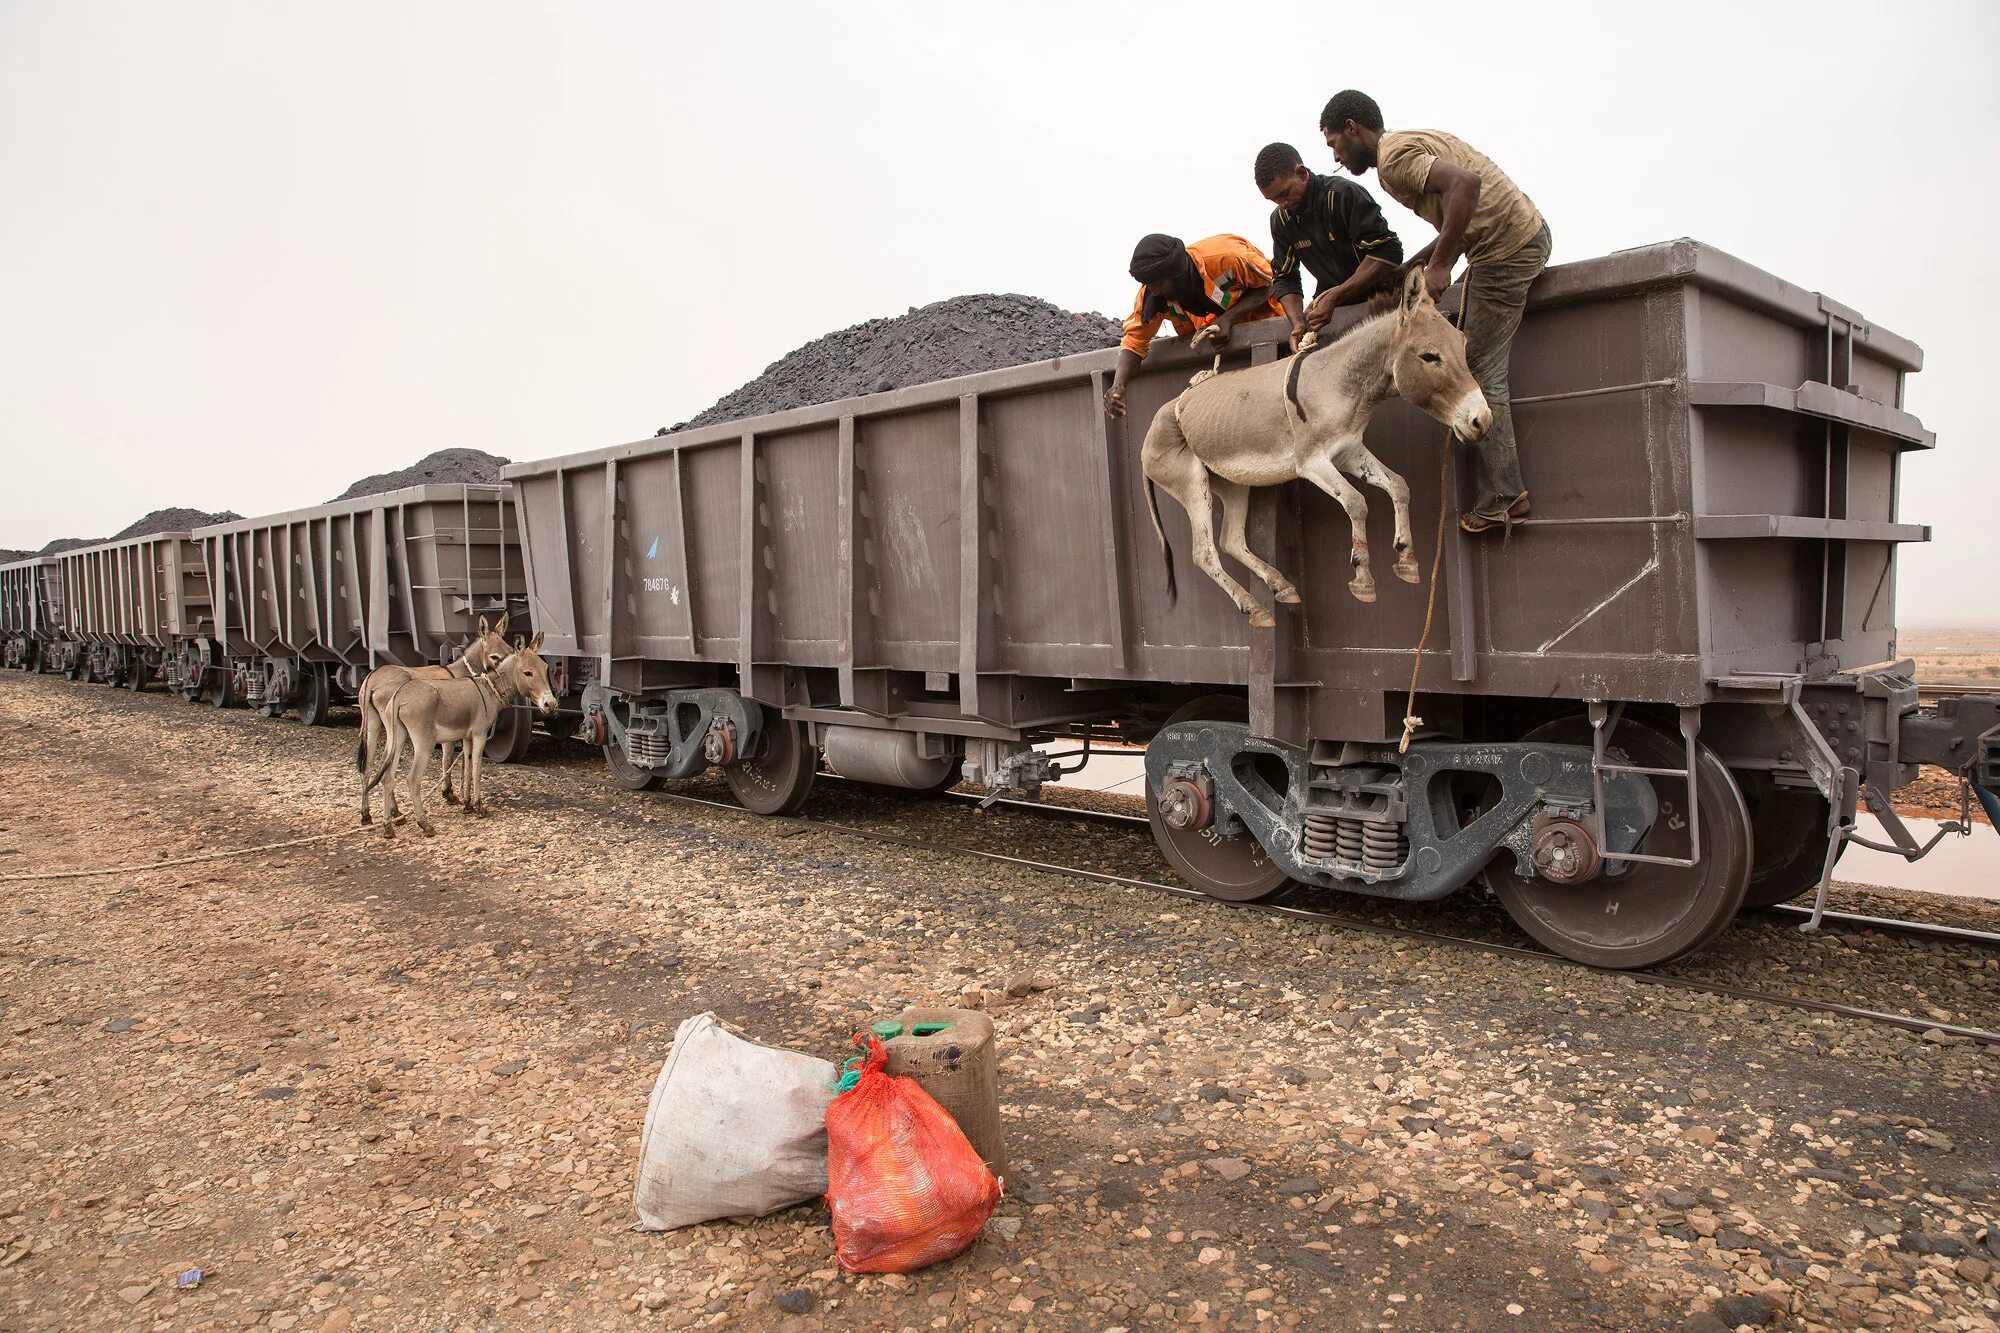 Груженные рудой. Самый длинный поезд в мире 682 вагона. Транспортировка животных. Вагон для перевозки животных. Перевозка живности в вагонах.